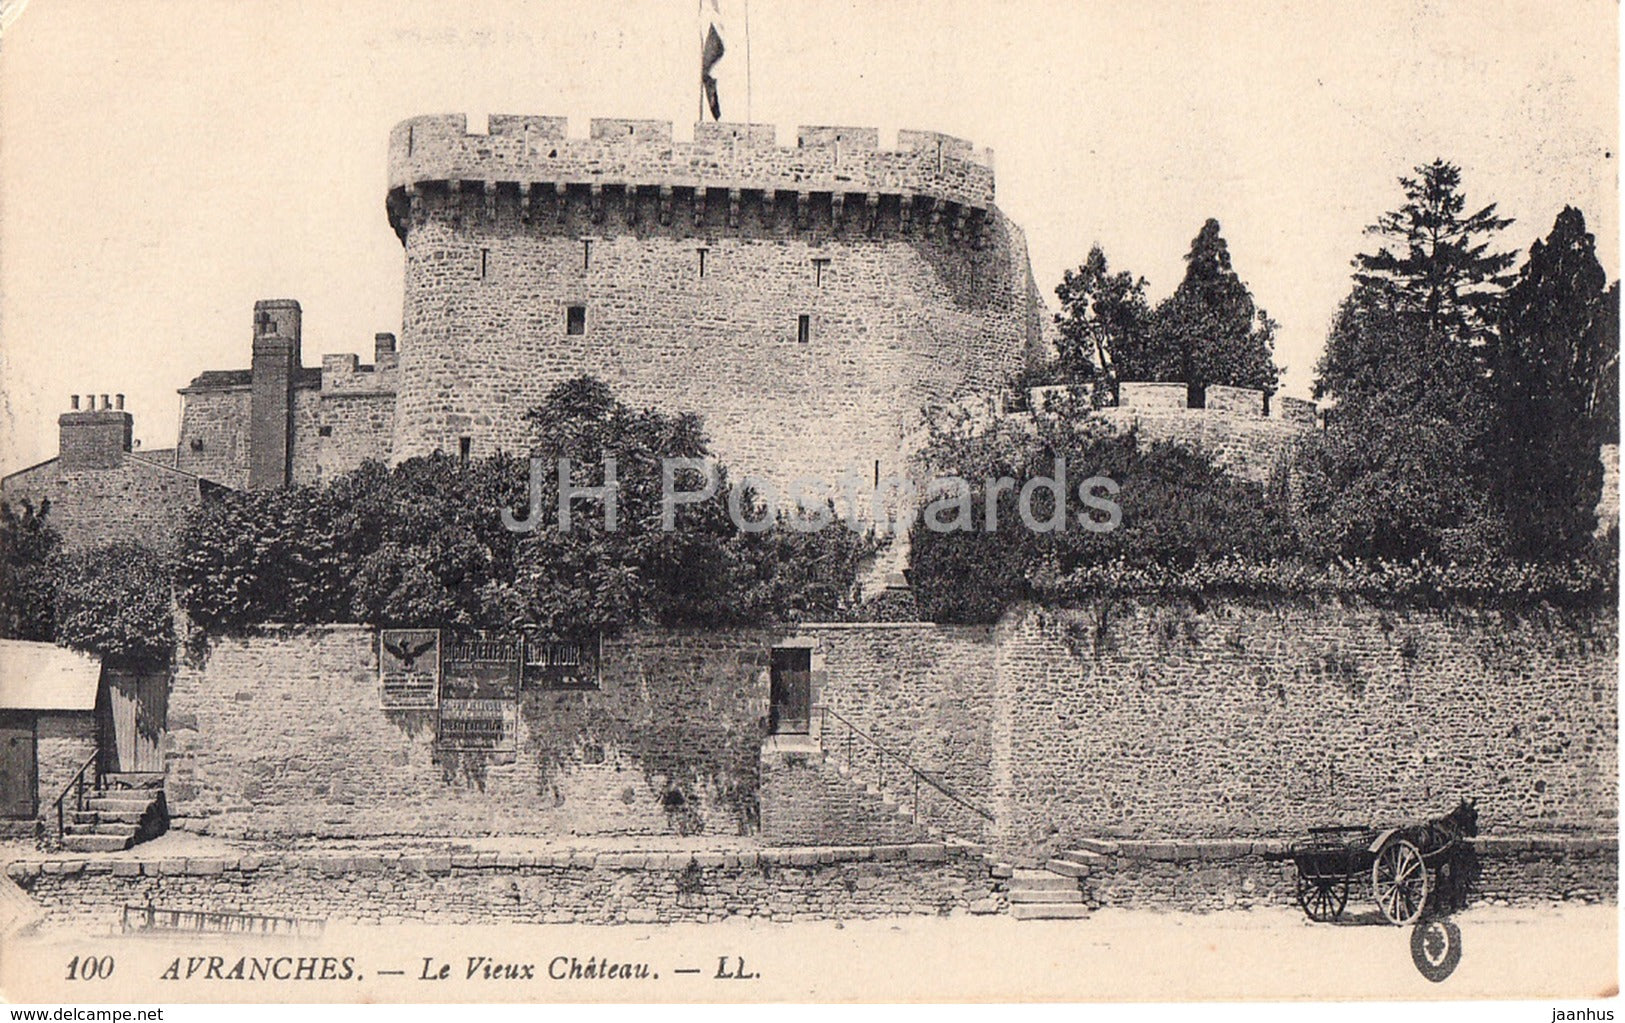 Avranches - Le Vieux Chateau - castle - 100 - old postcard - France - unused - JH Postcards